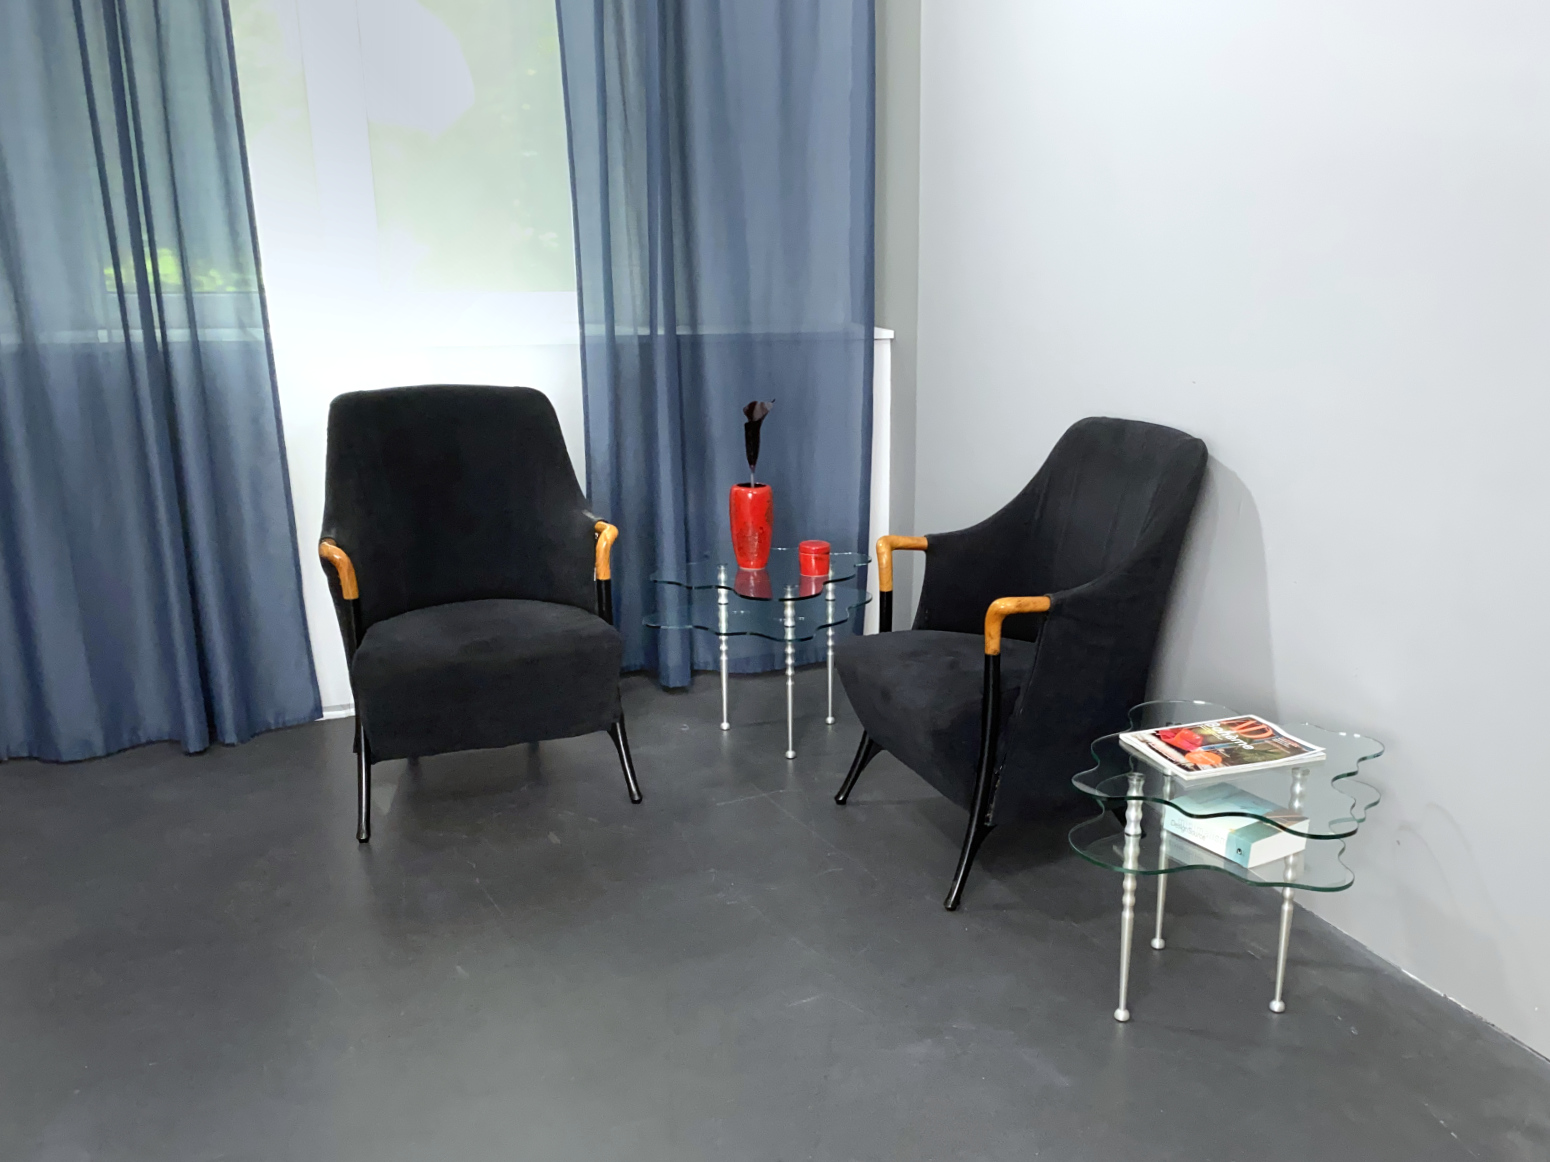 Armlehnstuhl, Sessel, Lounge Chair, Modell Progetti 63340 von Umberto Asnago für Giorgetti, Italien, 80er